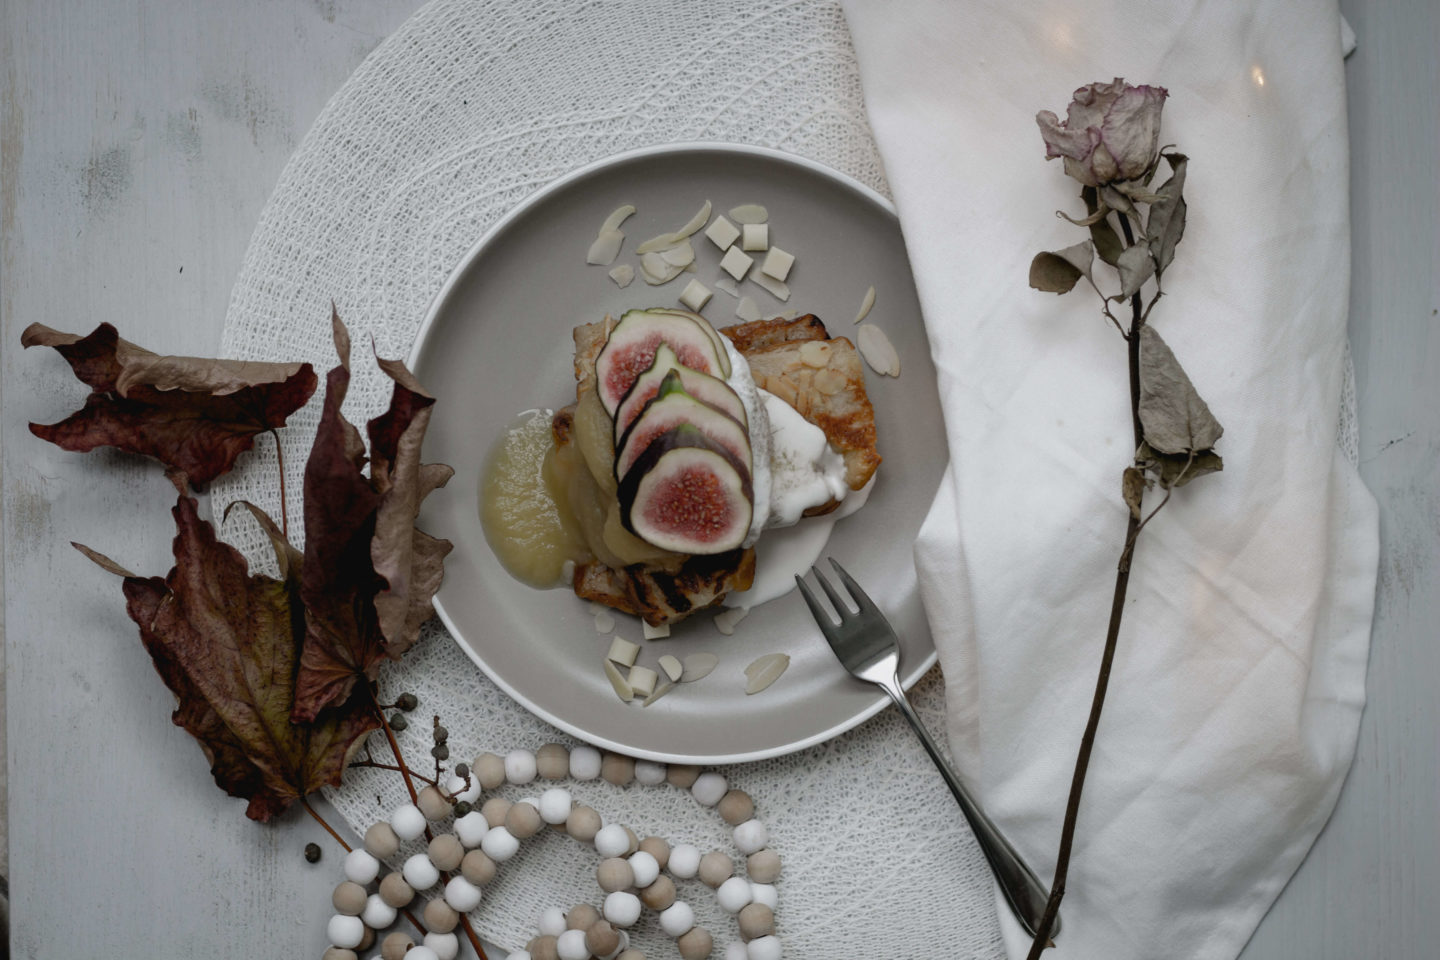 Vegane Kokos Brioche Ritter – French Brioche Toast-Soulfood – Herbstküche – Winterküche – Feigen – Mehlspeise-Dein HomeSpa – Food & Lifestyleblog aus dem Mostviertel-Ötscher